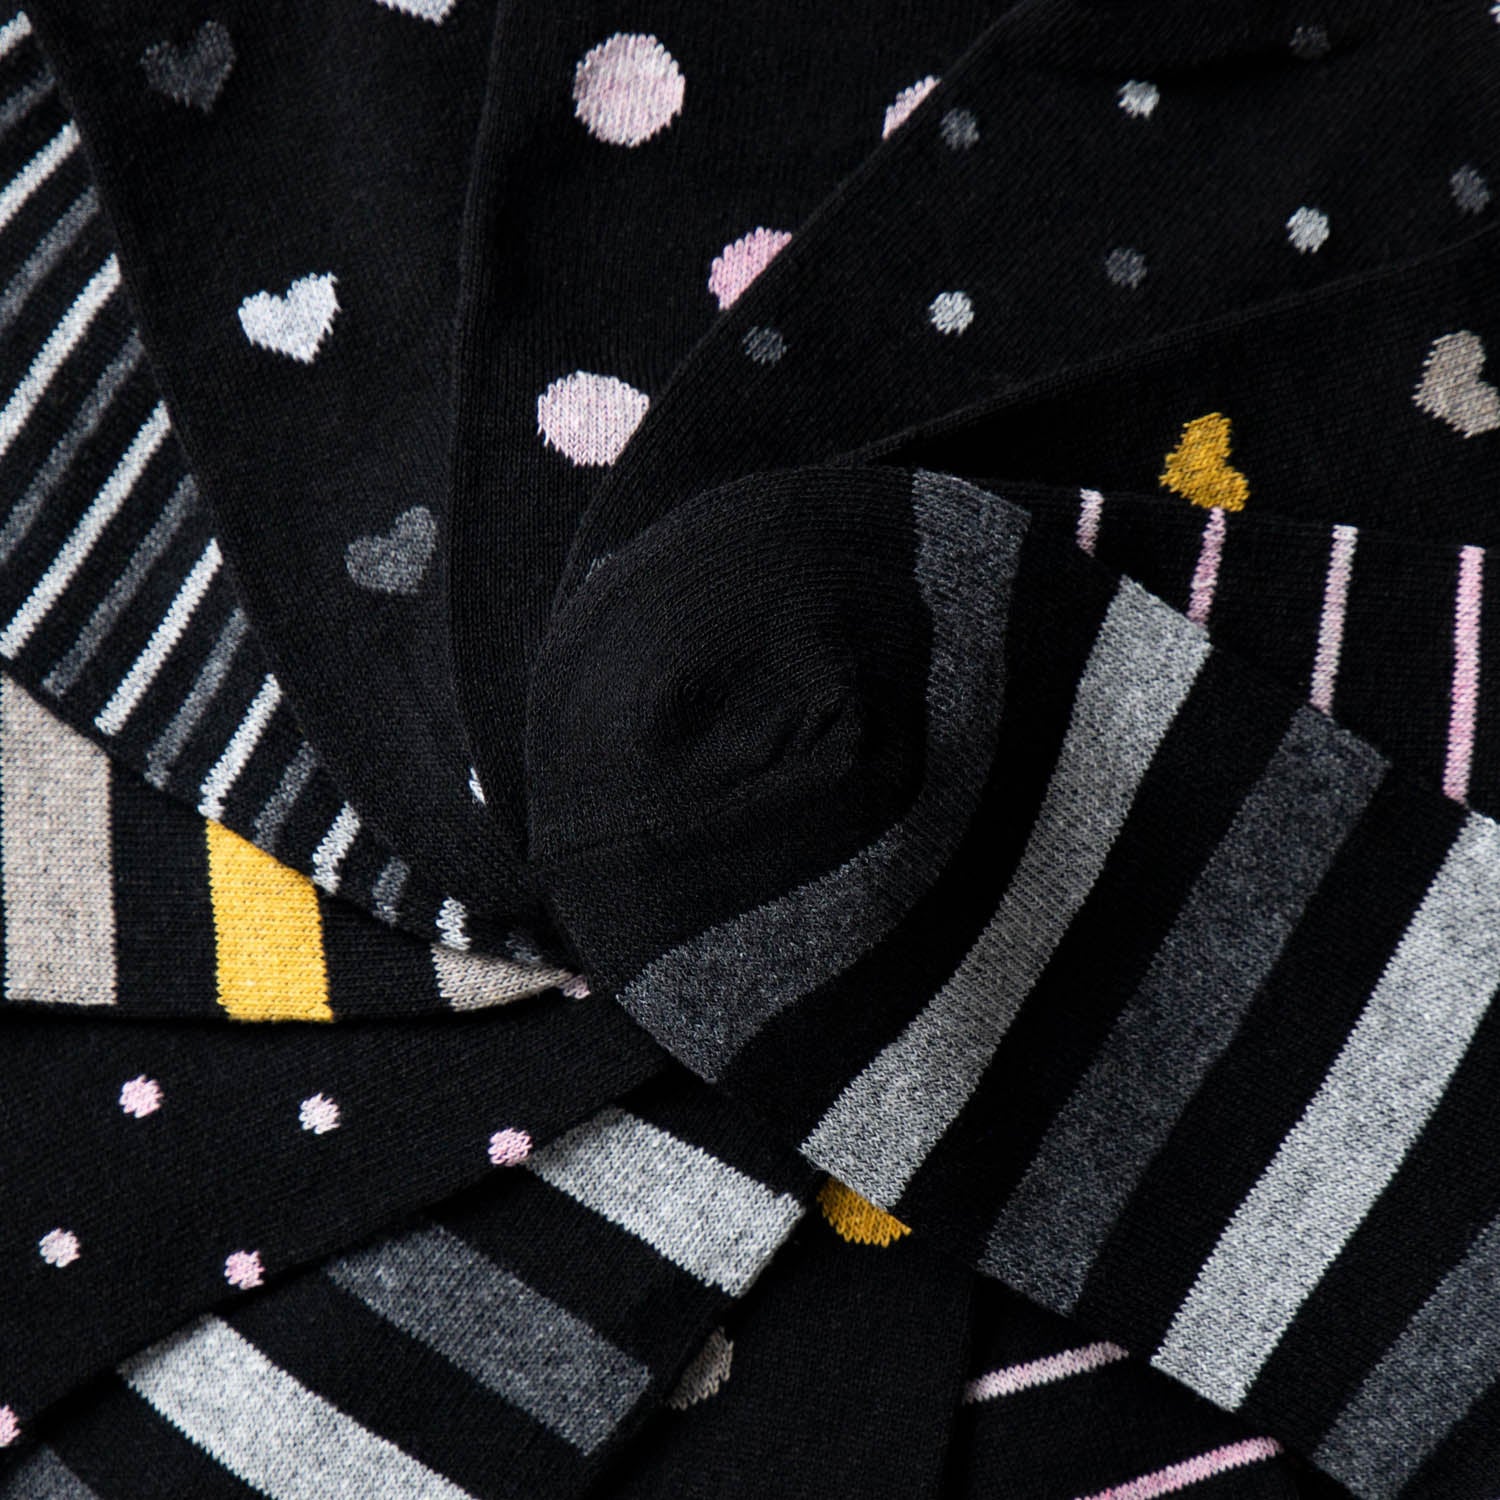 Damen Muster Socken 10er Pack (Modell: Rita)